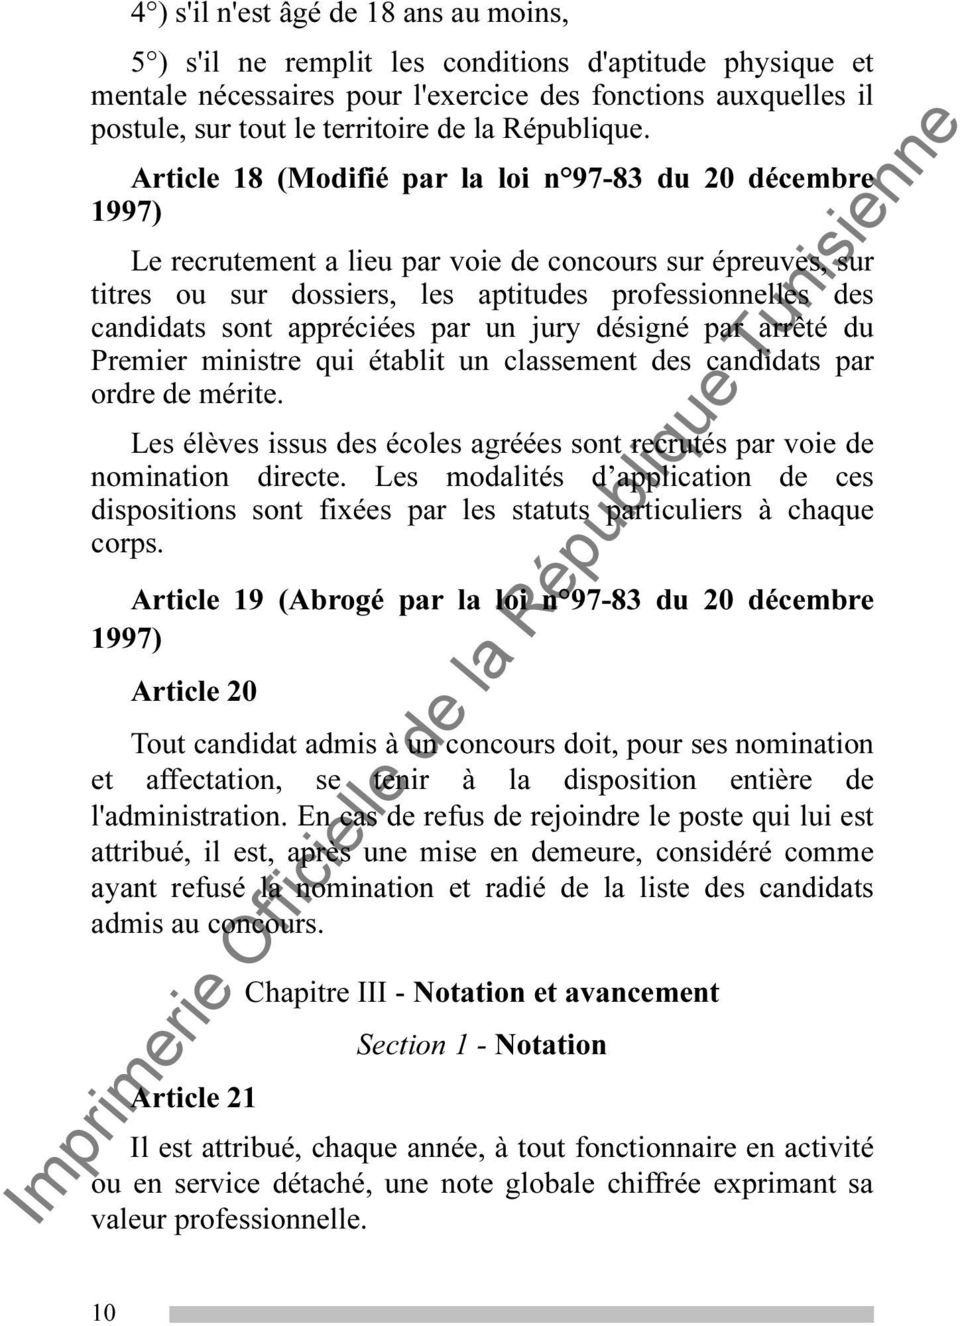 Article 18 (Modifié par la loi n 97-83 du 20 décembre 1997) Le recrutement a lieu par voie de concours sur épreuves, sur titres ou sur dossiers, les aptitudes professionnelles des candidats sont